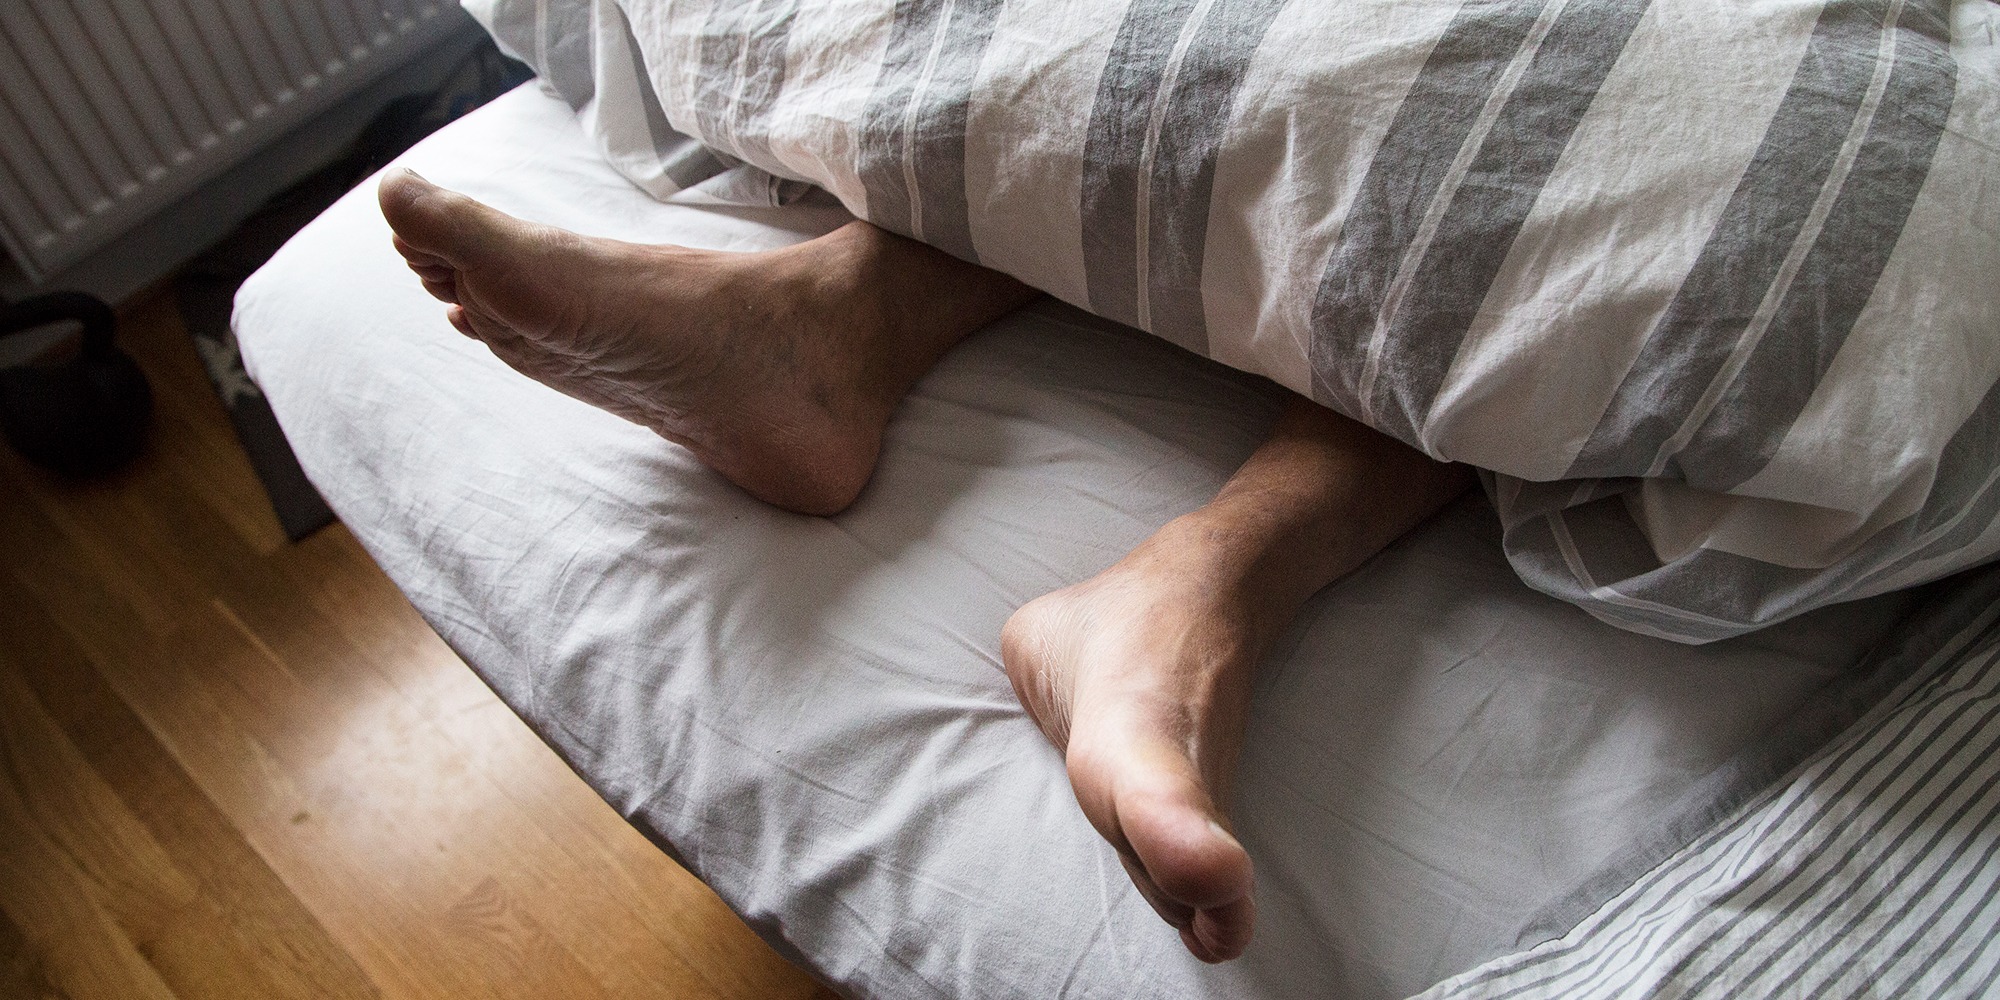 två fötter sticker ut under ett täcke vid fotändan av en säng.